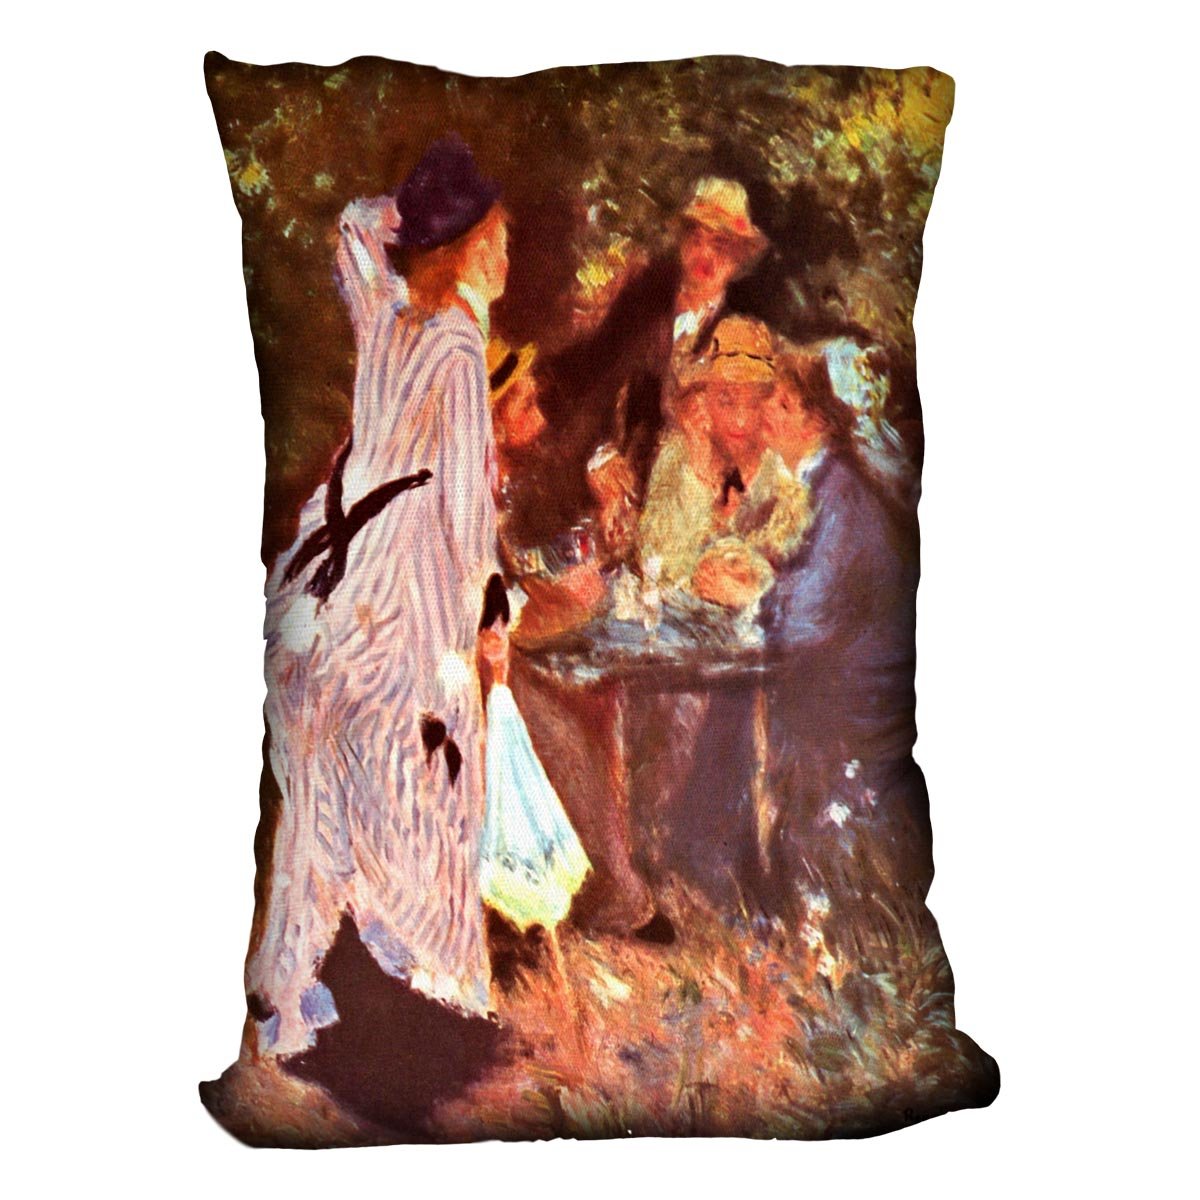 Moulin de la Galette by Renoir Throw Pillow